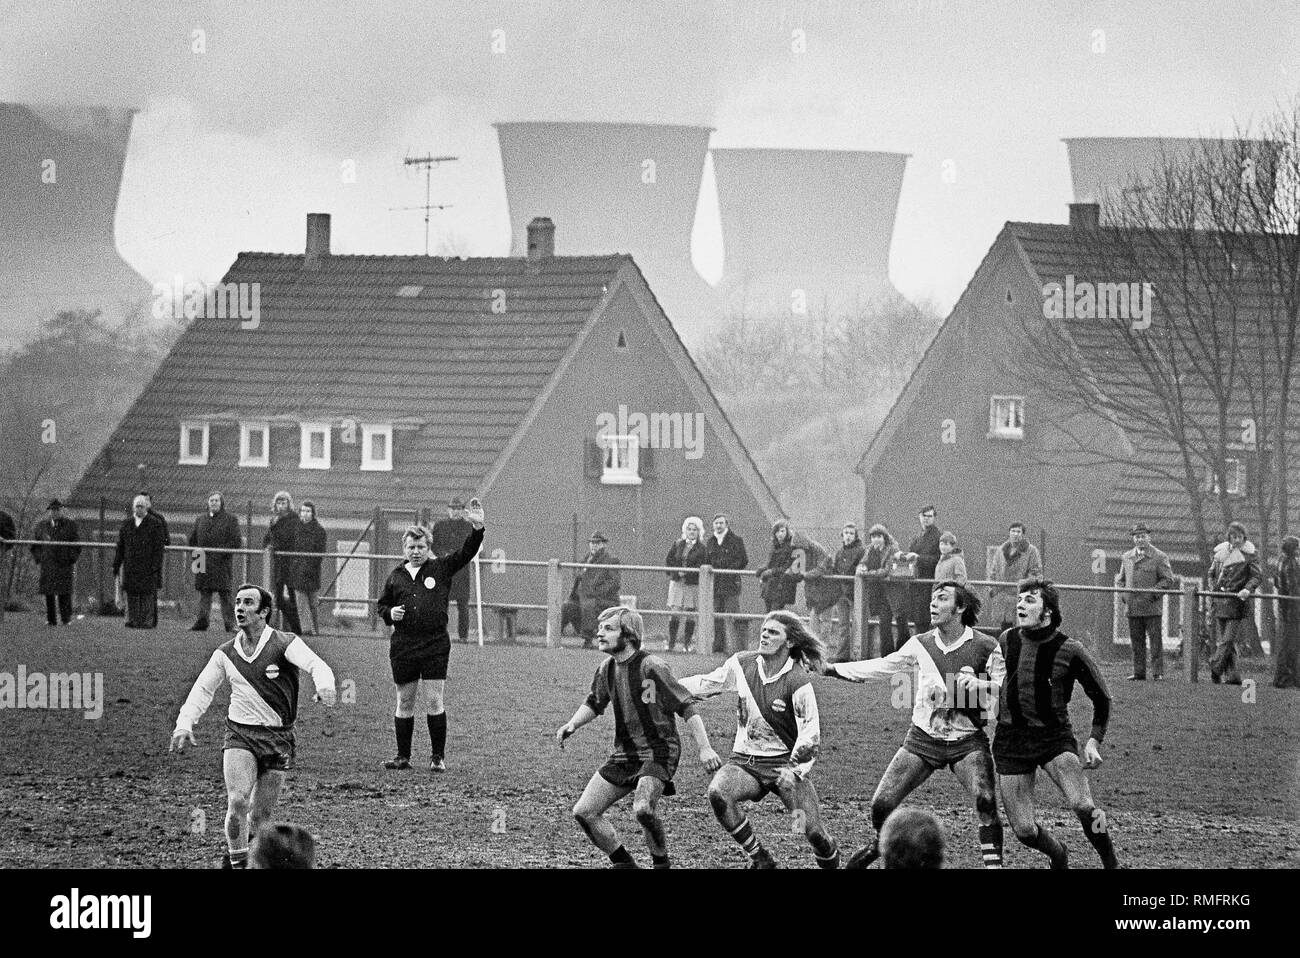 Domenica partita di calcio tra due squadre amatoriali contro lo sfondo delle torri di raffreddamento del disco centrali a carbone vegetale Springorum. Foto Stock